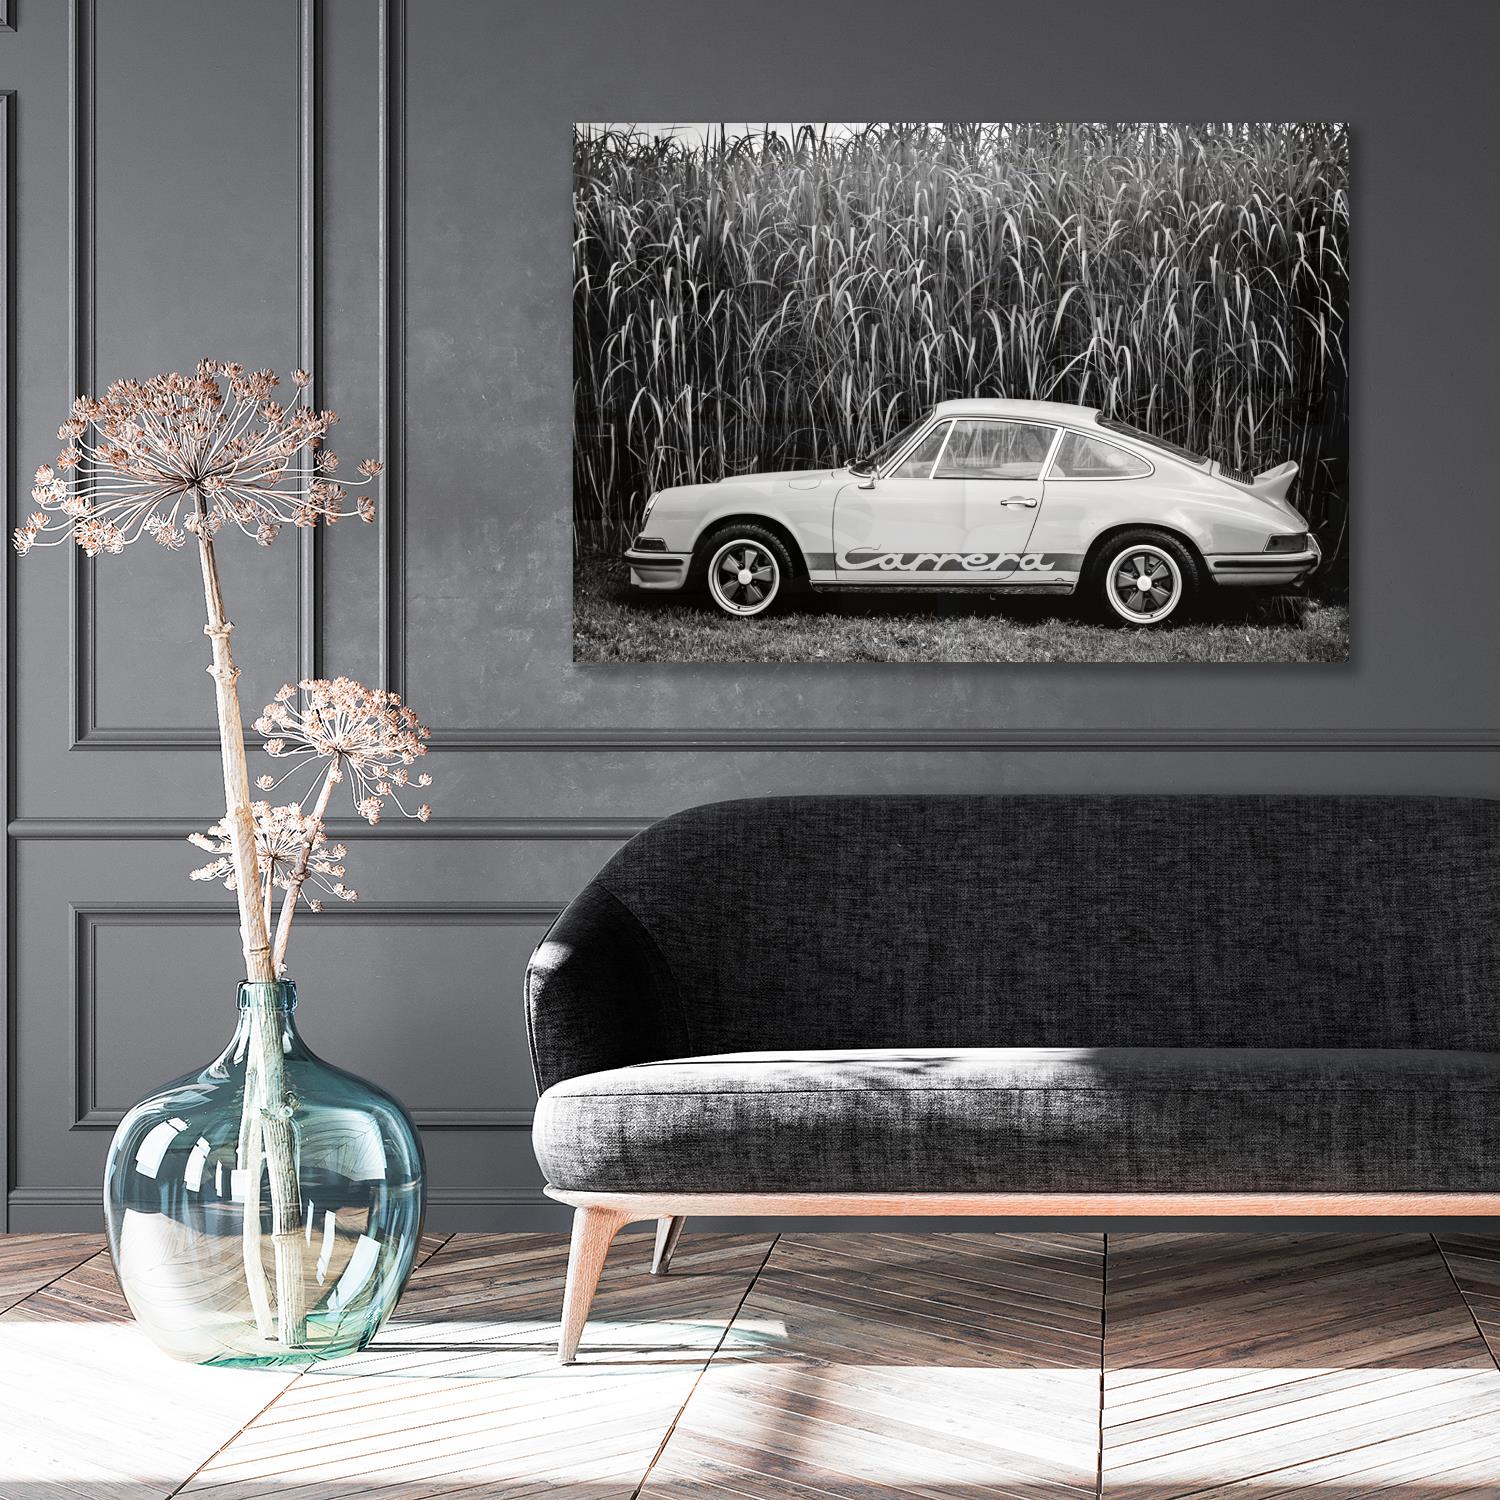 Das Bild zeigt ein Acrylglasbild in einem edlen Zimmer mit einem Porschemotiv.